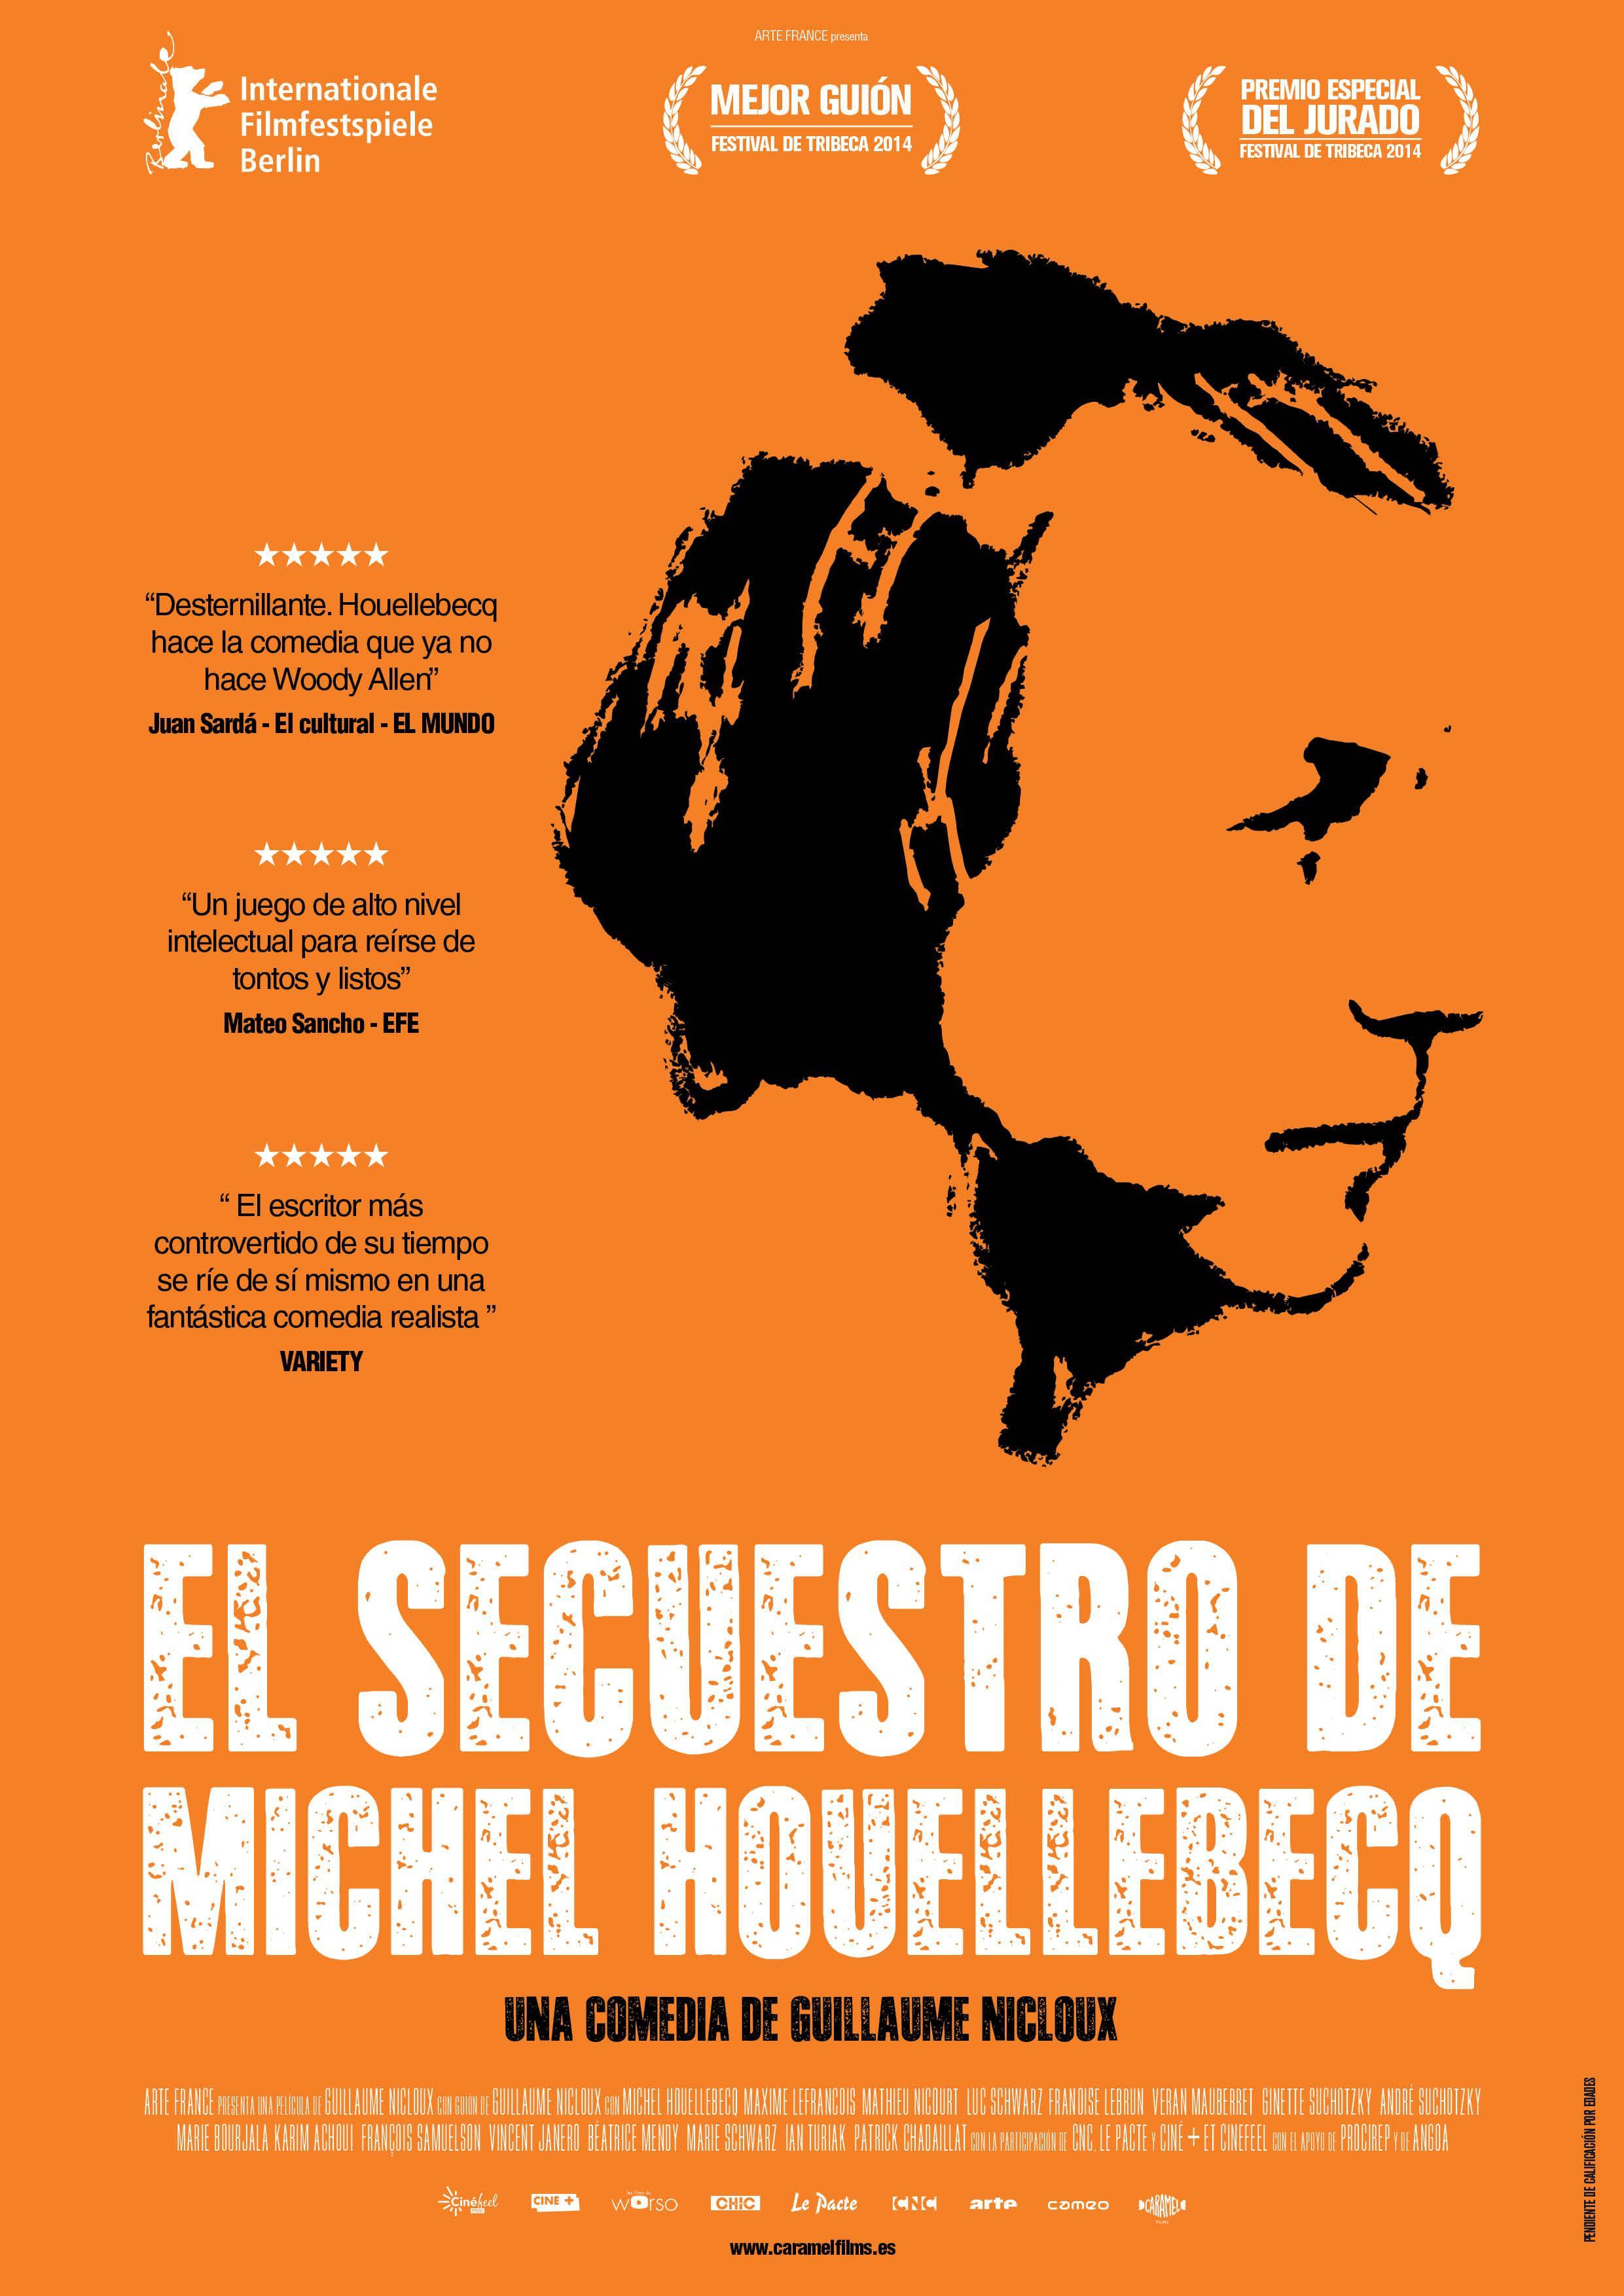 Постер фильма Похищение Мишеля Уэльбека | L'enlèvement de Michel Houellebecq